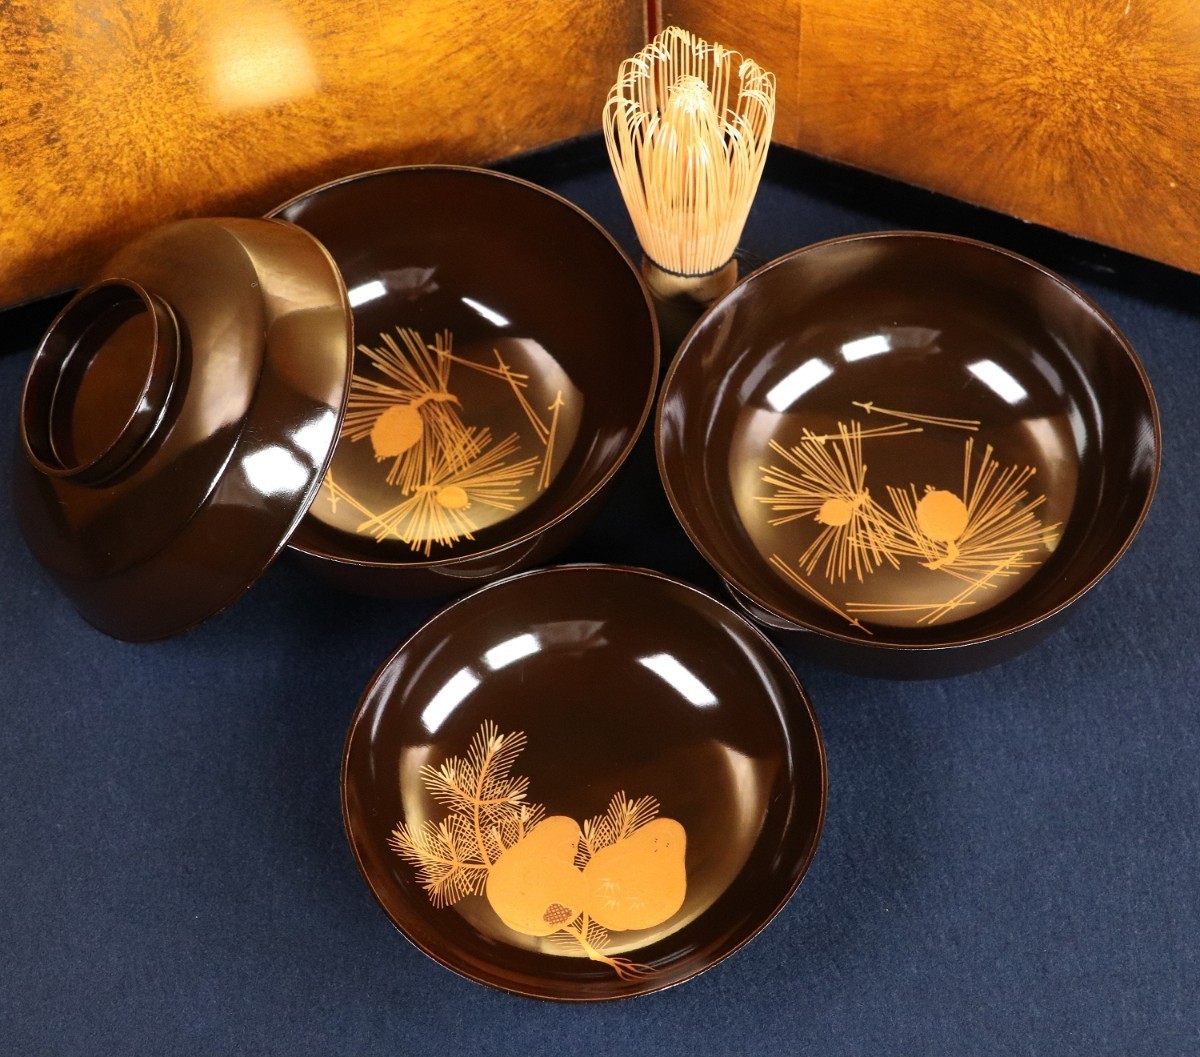 輪島塗 塩安製 輪島箸 箸 5膳セット 高級漆器 漆芸 天然木 懐石道具 茶